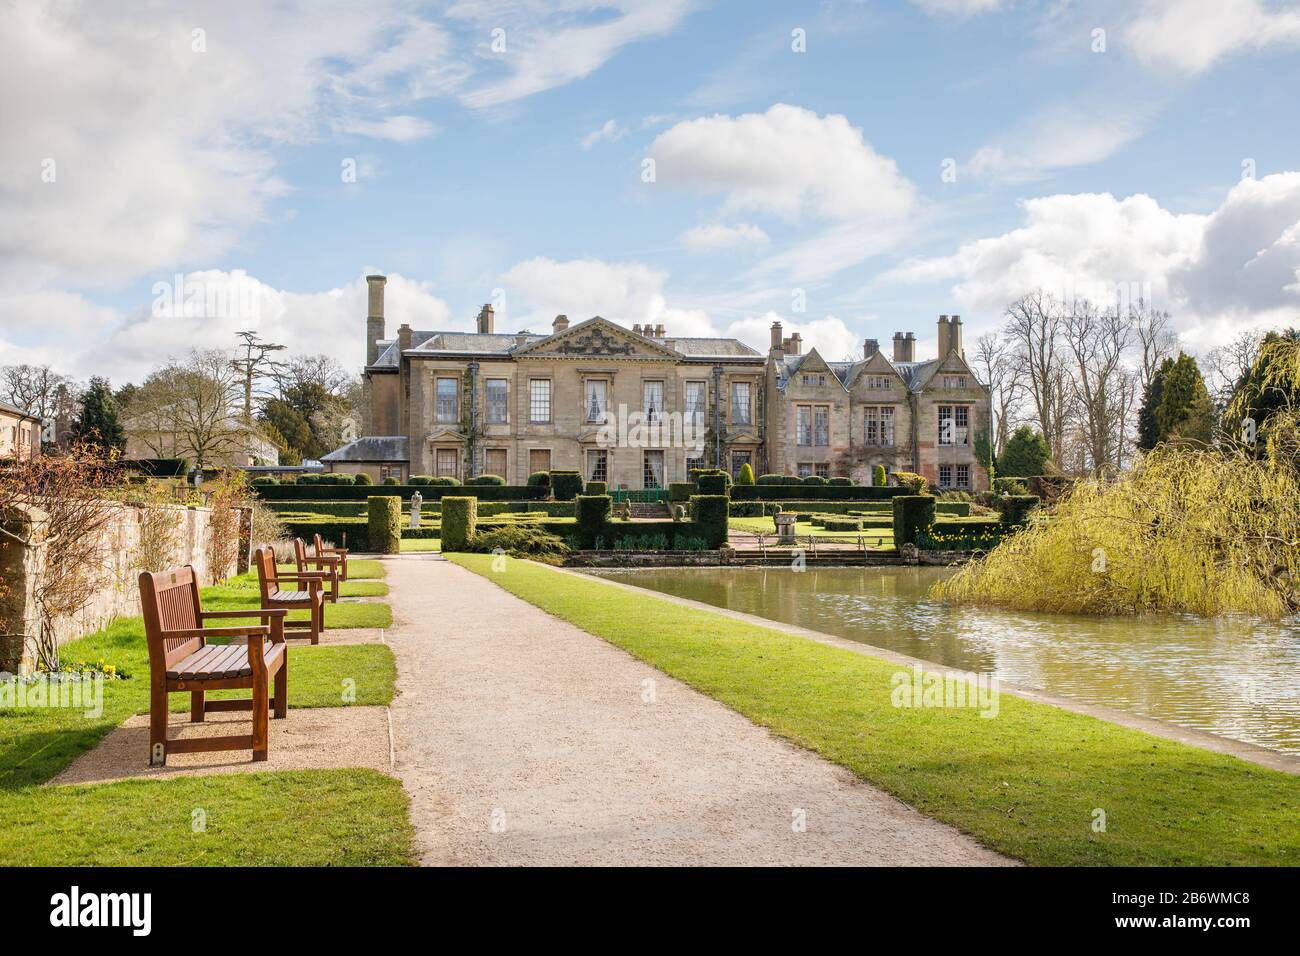 Binley, Warwickshire, marzo de 2020: Coombe Abbey Hotel, un edificio catalogado de Grado I y antigua casa de campo con sus jardines ornamentales y el lago. Foto de stock